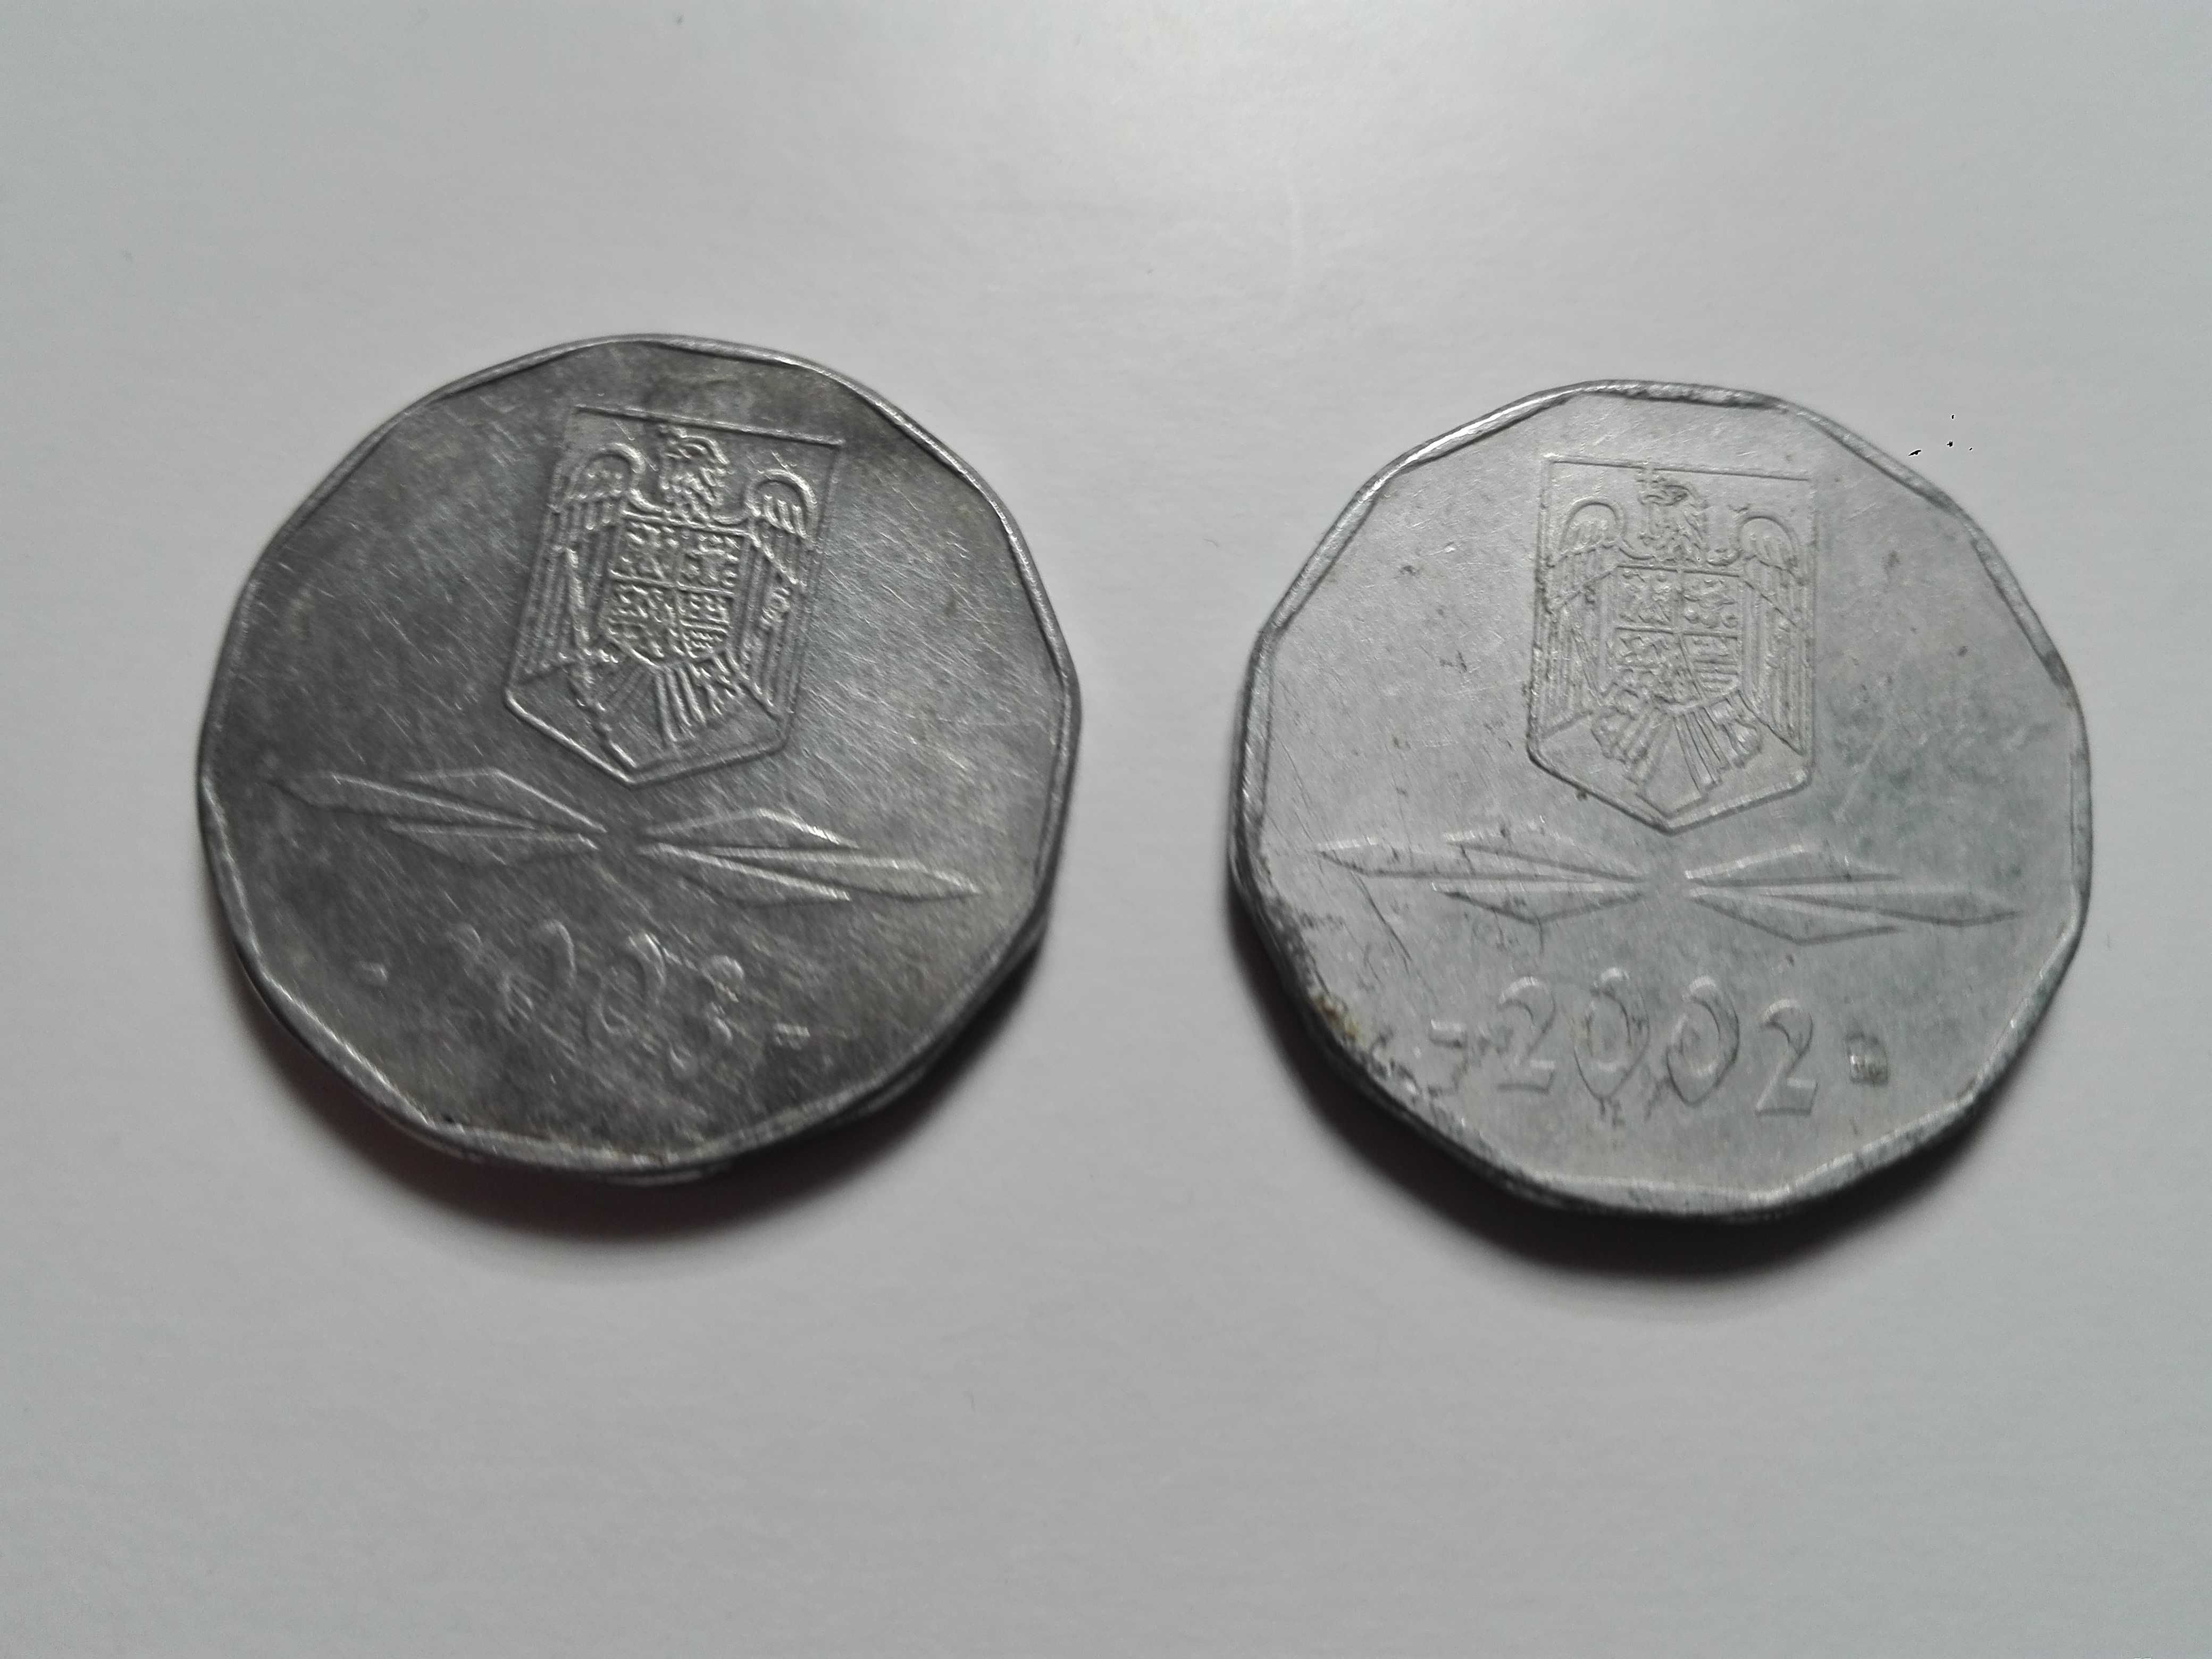 Monede rare de colectie 5000 lei, an 2002 si 2003